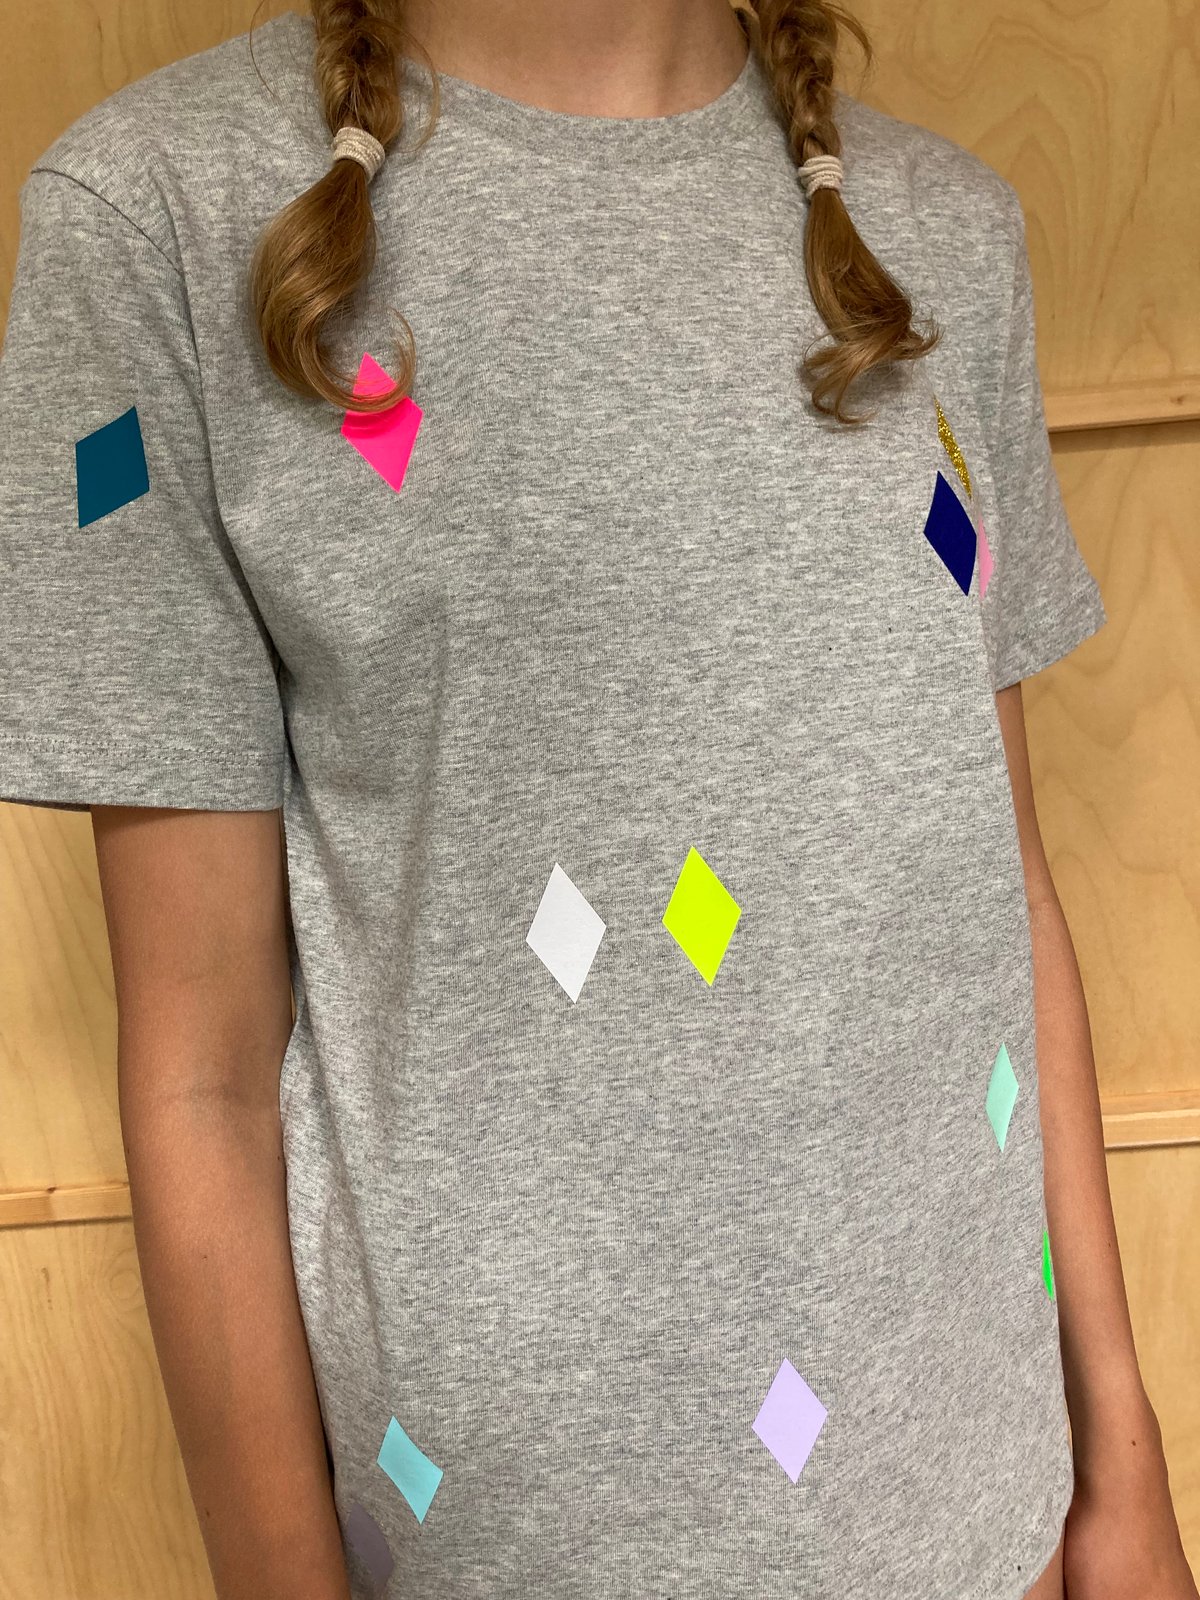 DIN A4 Lama-Serie Color Bügeltransfer Cool Lama Bügel-Bilder schnell & einfach aufbügeln DIY Textildesign Textilien wie T-Shirts & Taschen mit Bügelmotiven verzieren 